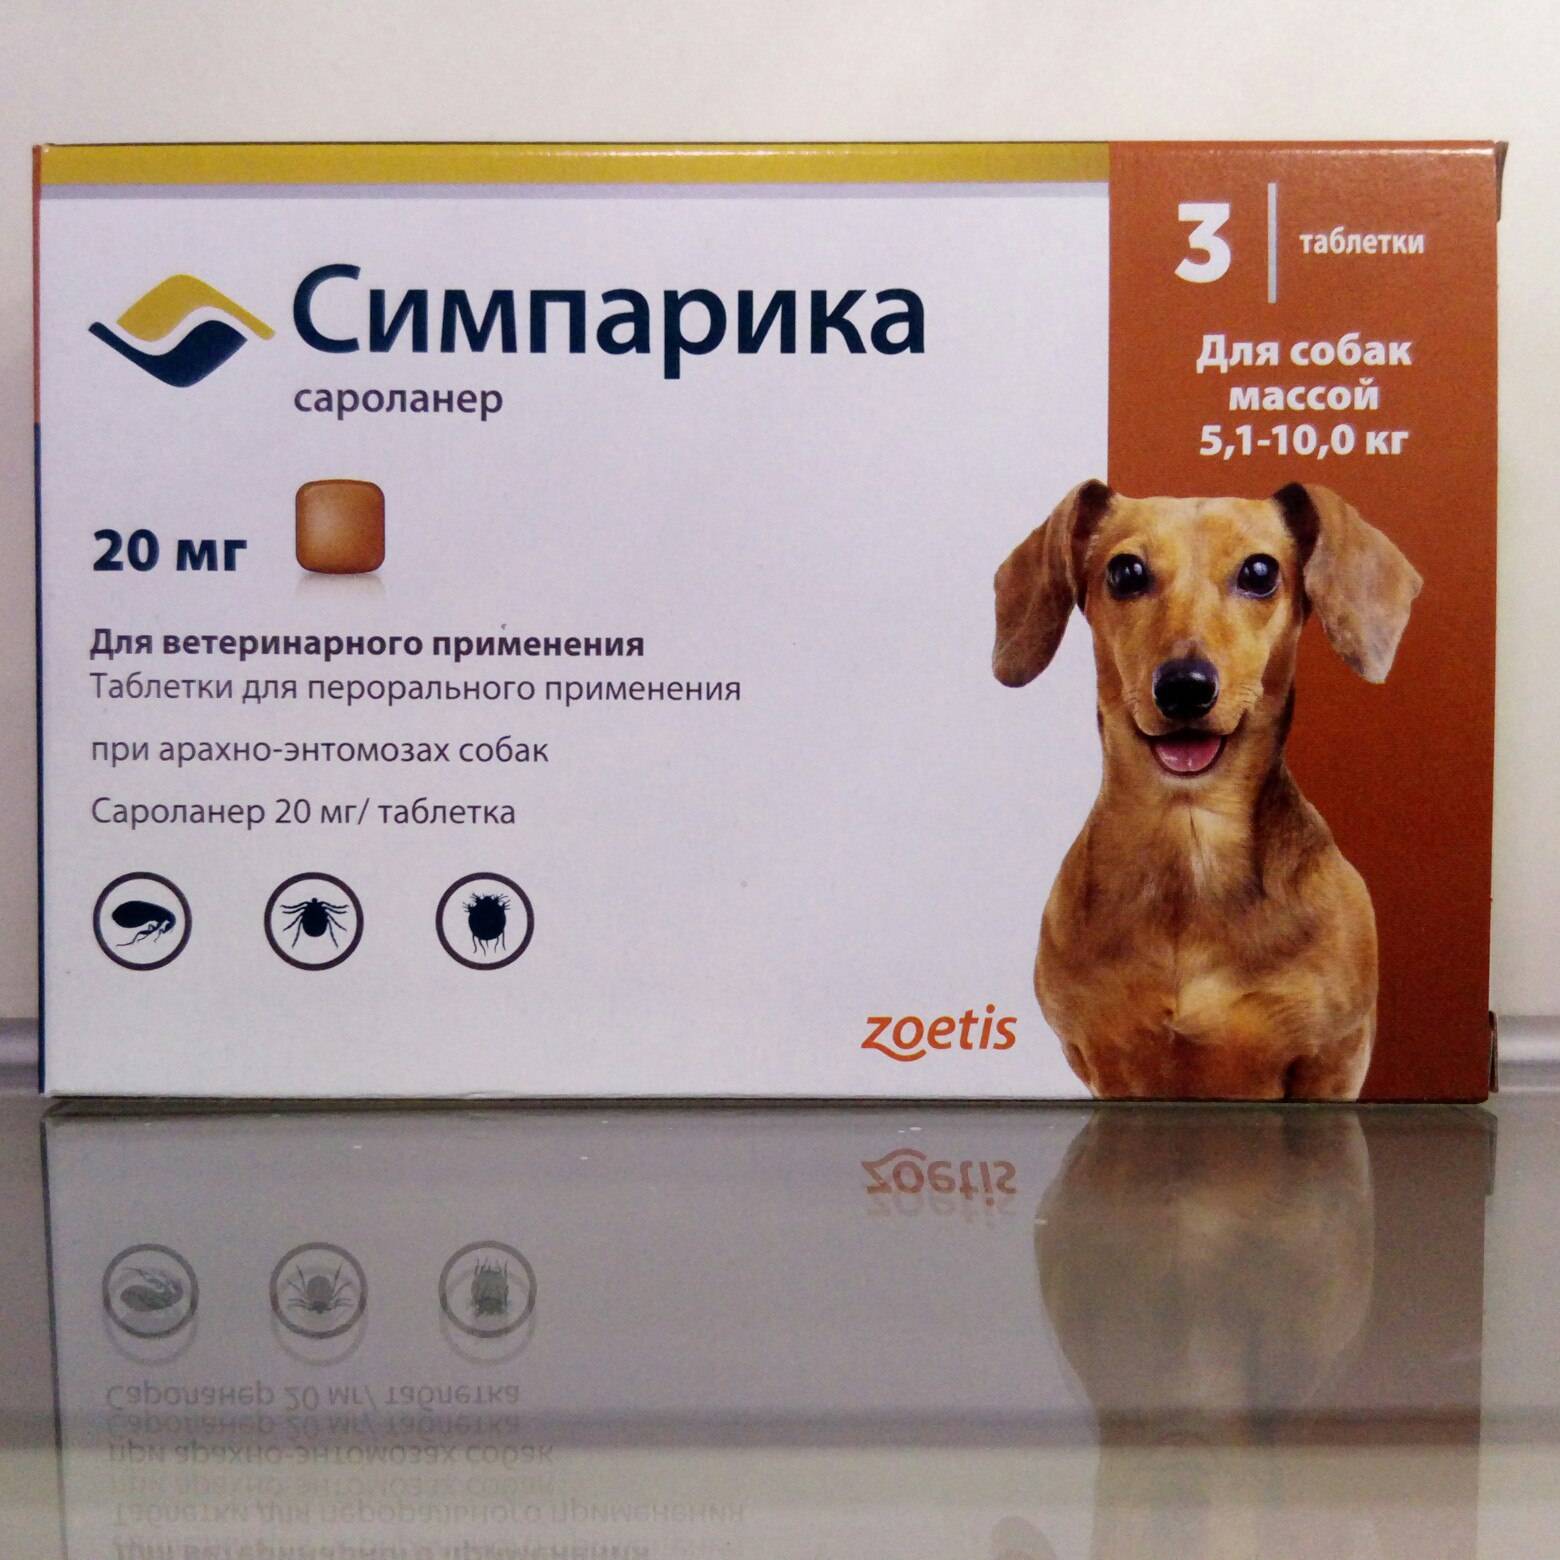 Как дать собаке таблетку и заставить её проглотить?